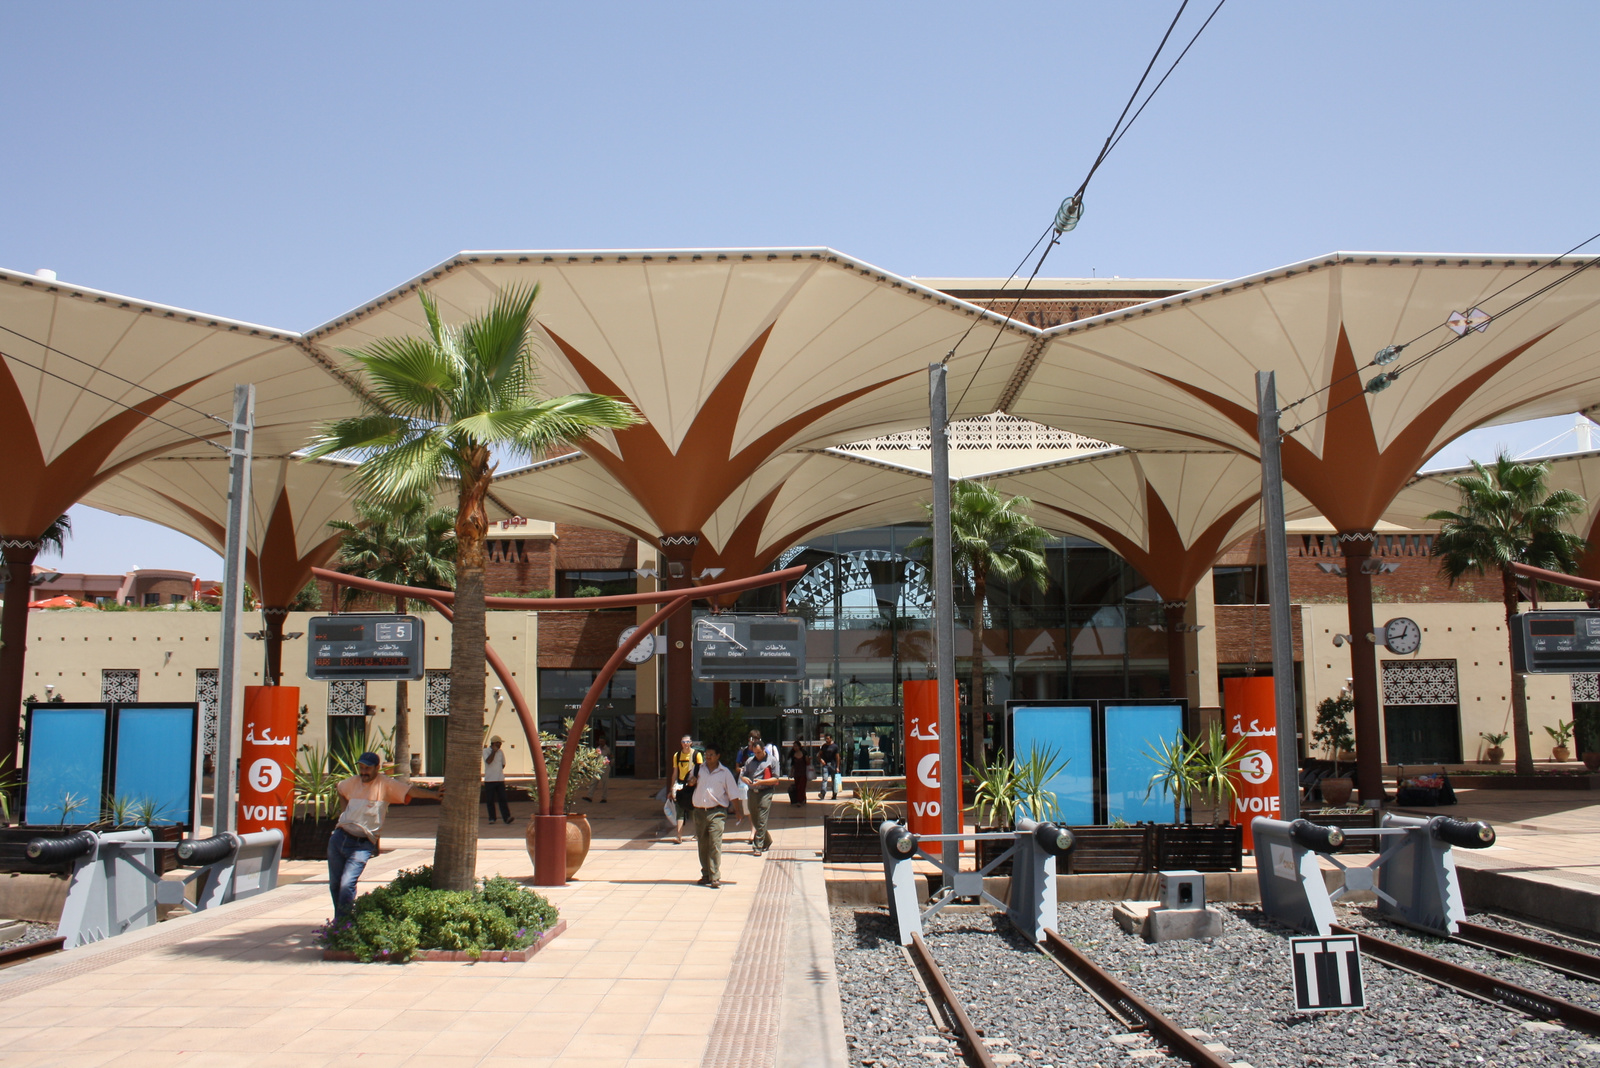 Gare de Marrakech 2